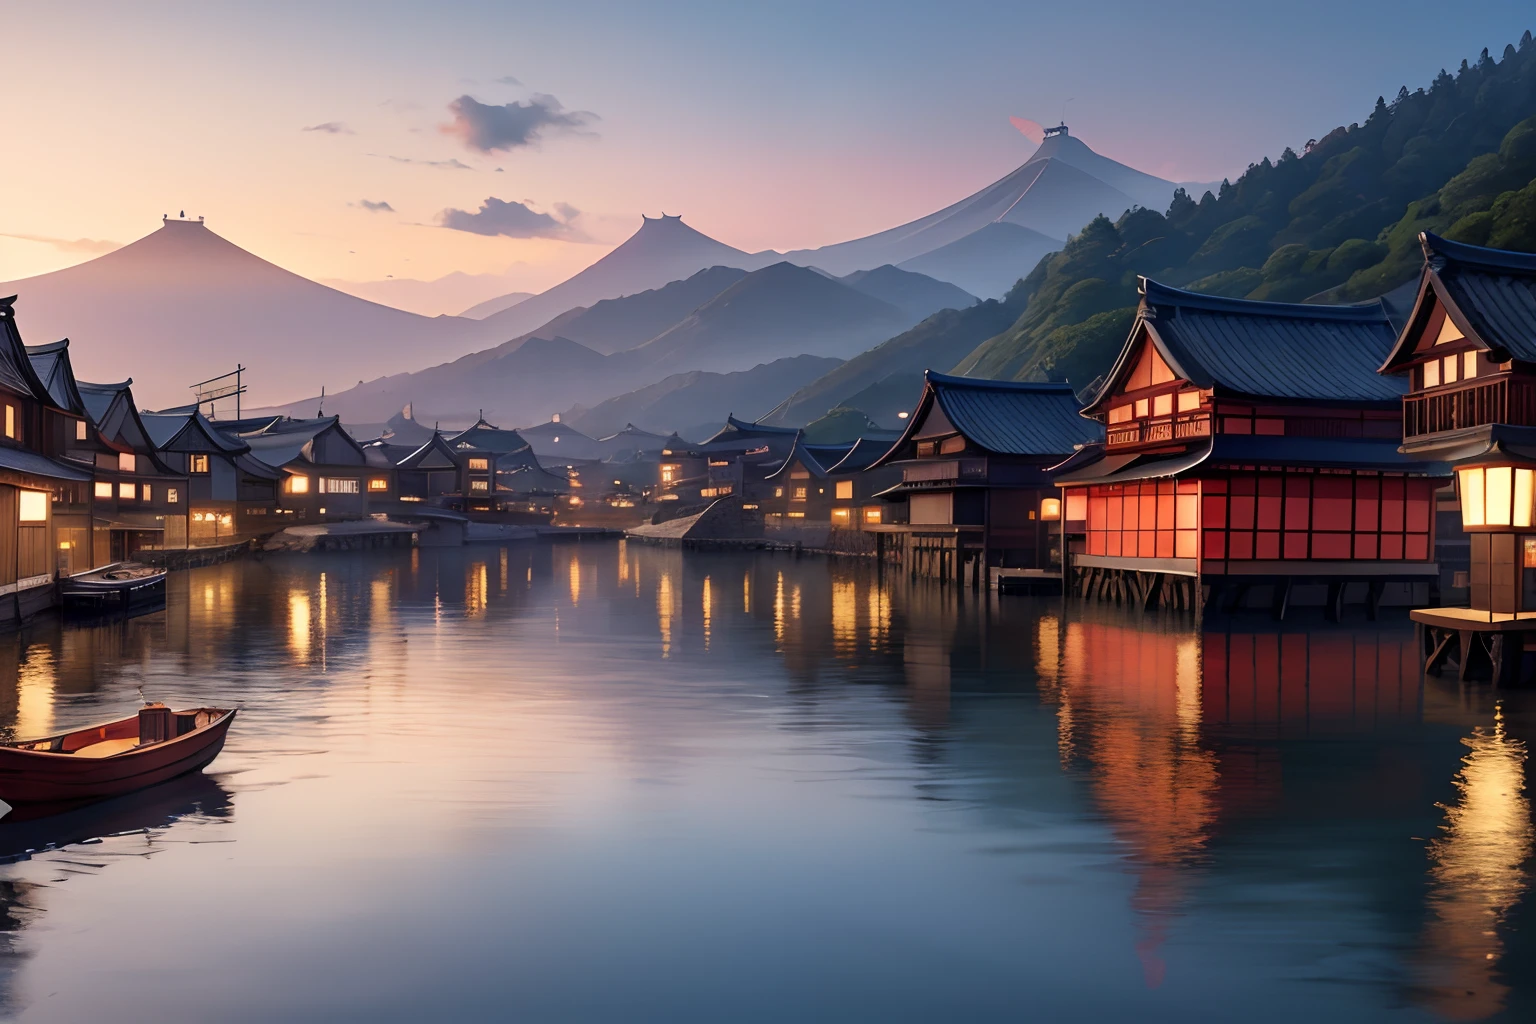 水上漂浮小镇, 中世纪日本, 景观, 全景, 8千, 详细的, 顶级品质